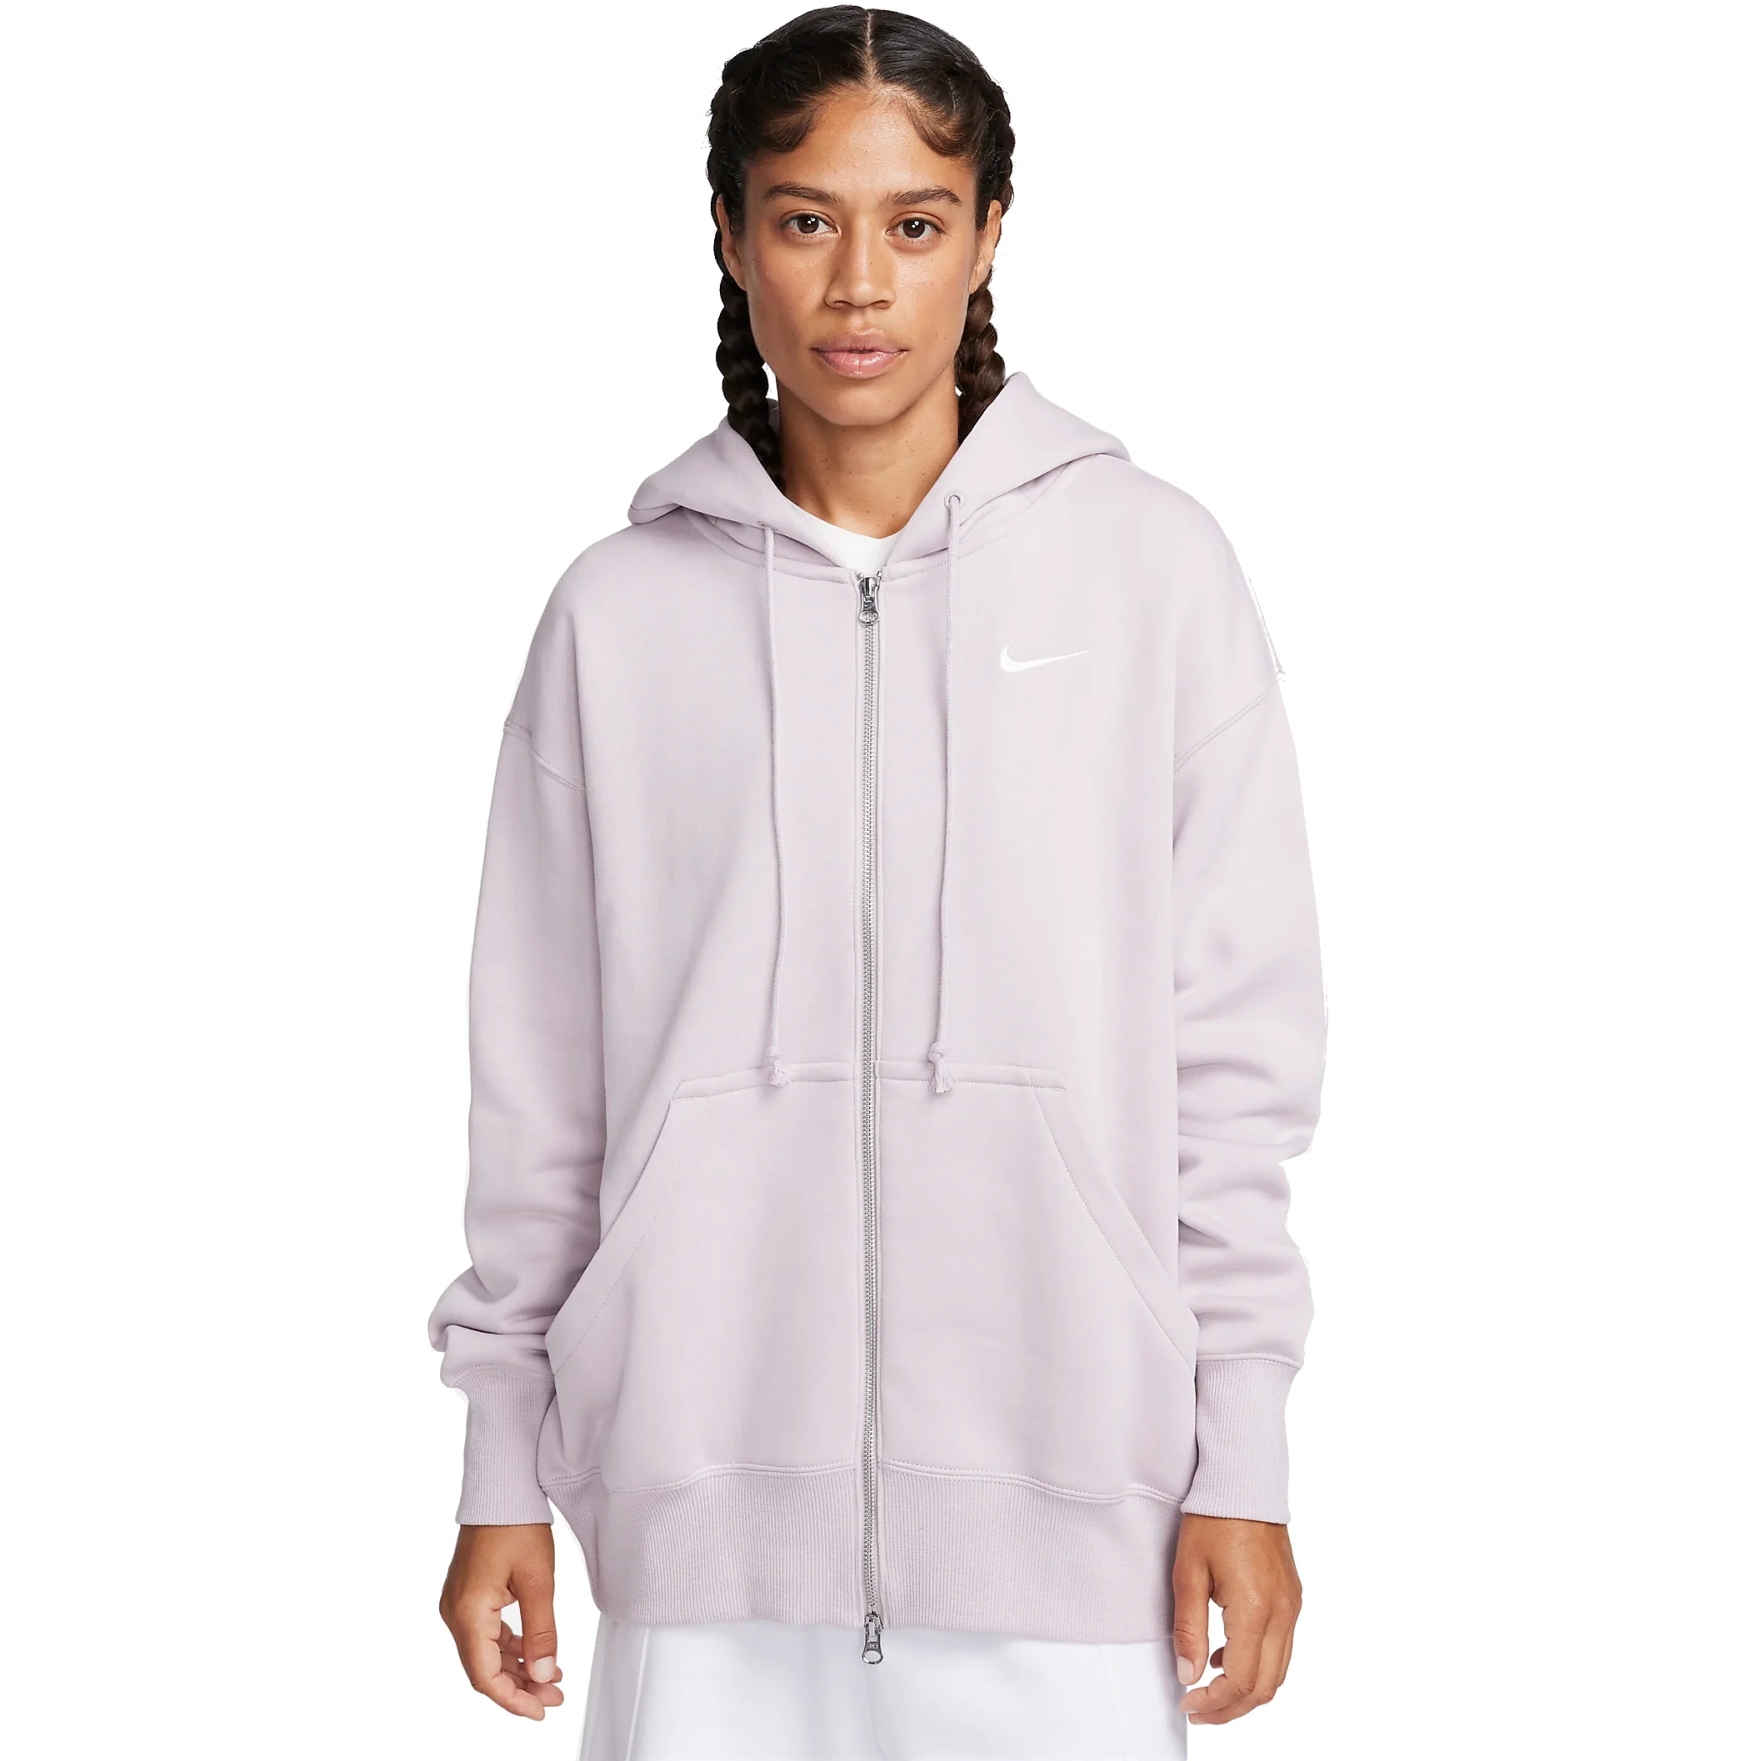 Produktbild von Nike Sportswear Phoenix Fleece Extragroßer Hoodie Damen - platinum violet/sail DQ5758-019